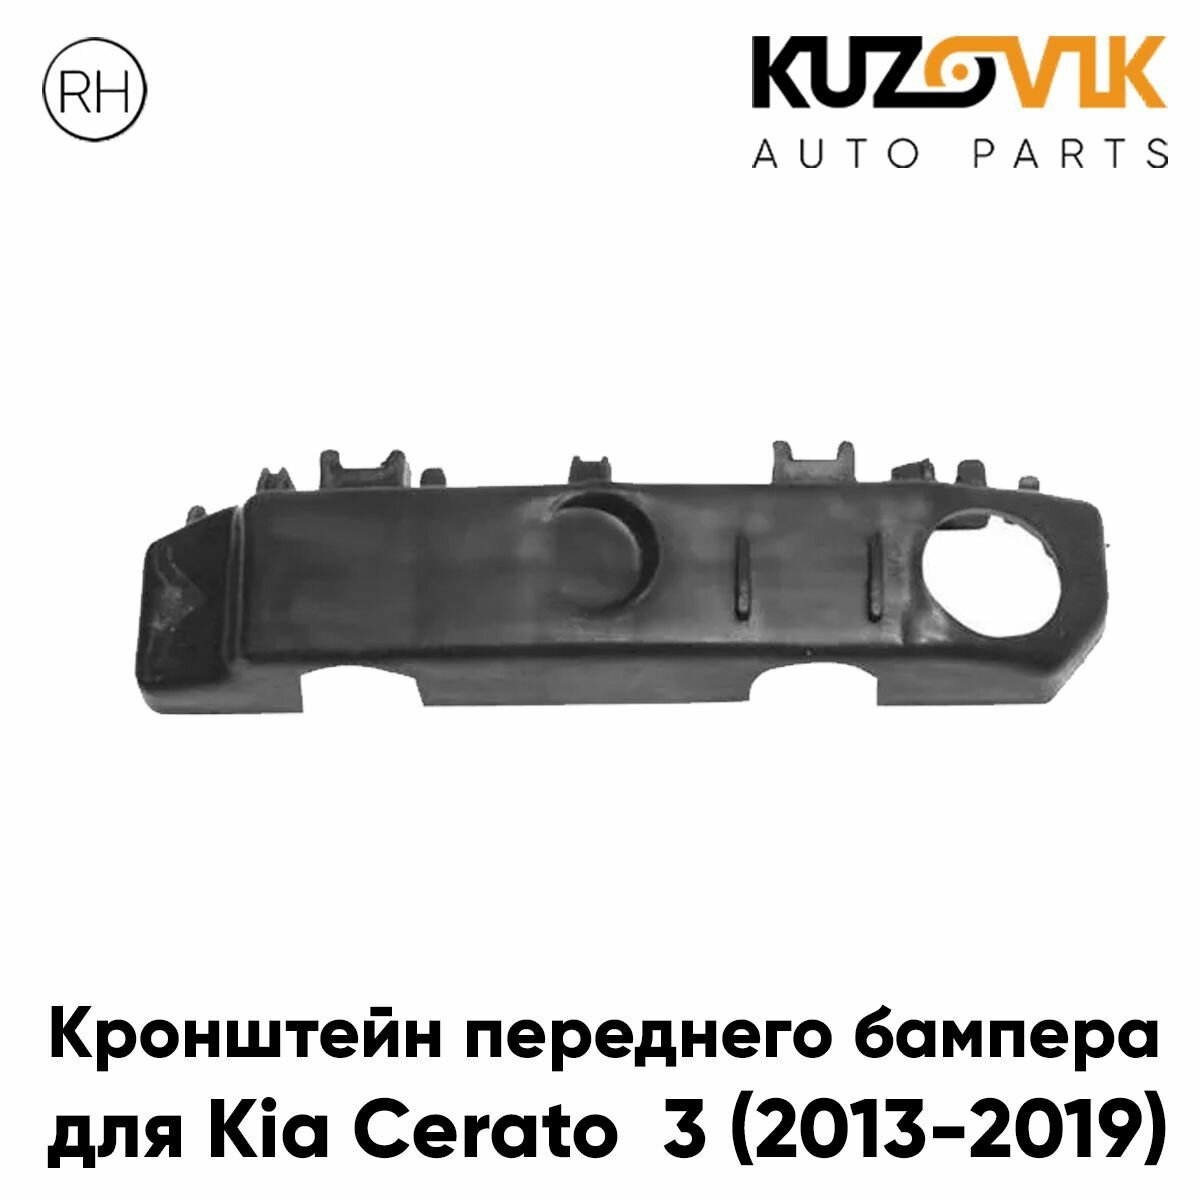 Крепление переднего бампера левое Kia Cerato 3 (2013-2016)